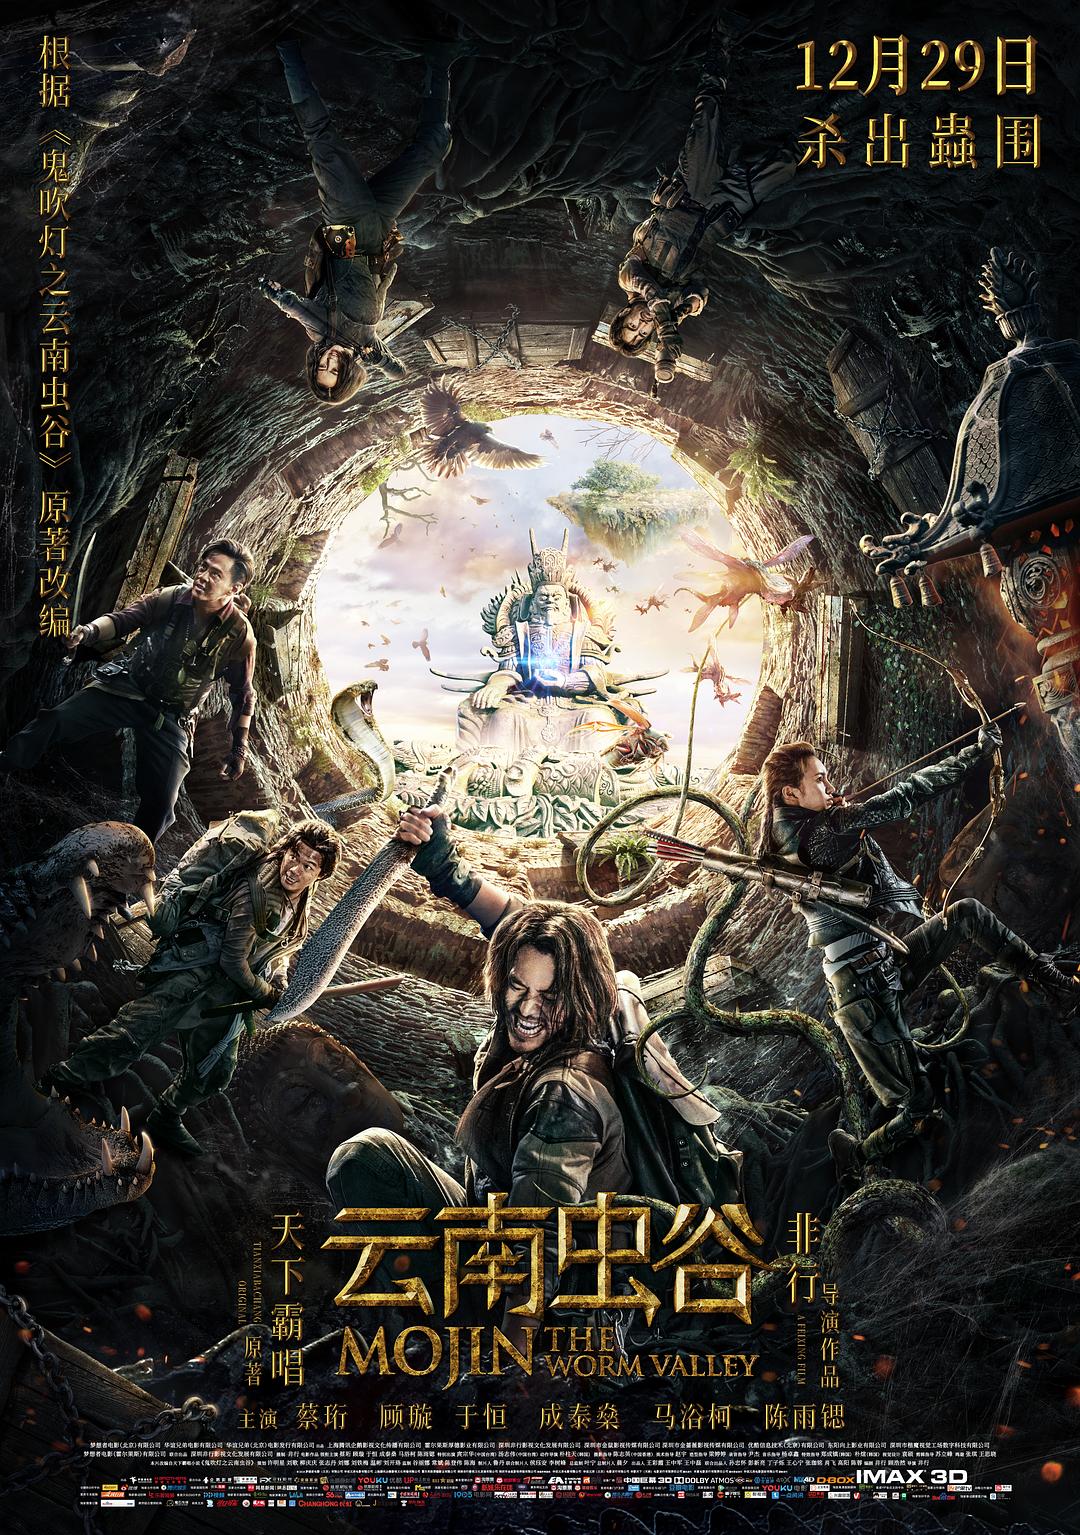 ϳ Mojin.The.Worm.Valley.2018.CHINESE.1080p.BluRay.AVC.DTS-HD.MA.5.1-FGT 21.28-1.png